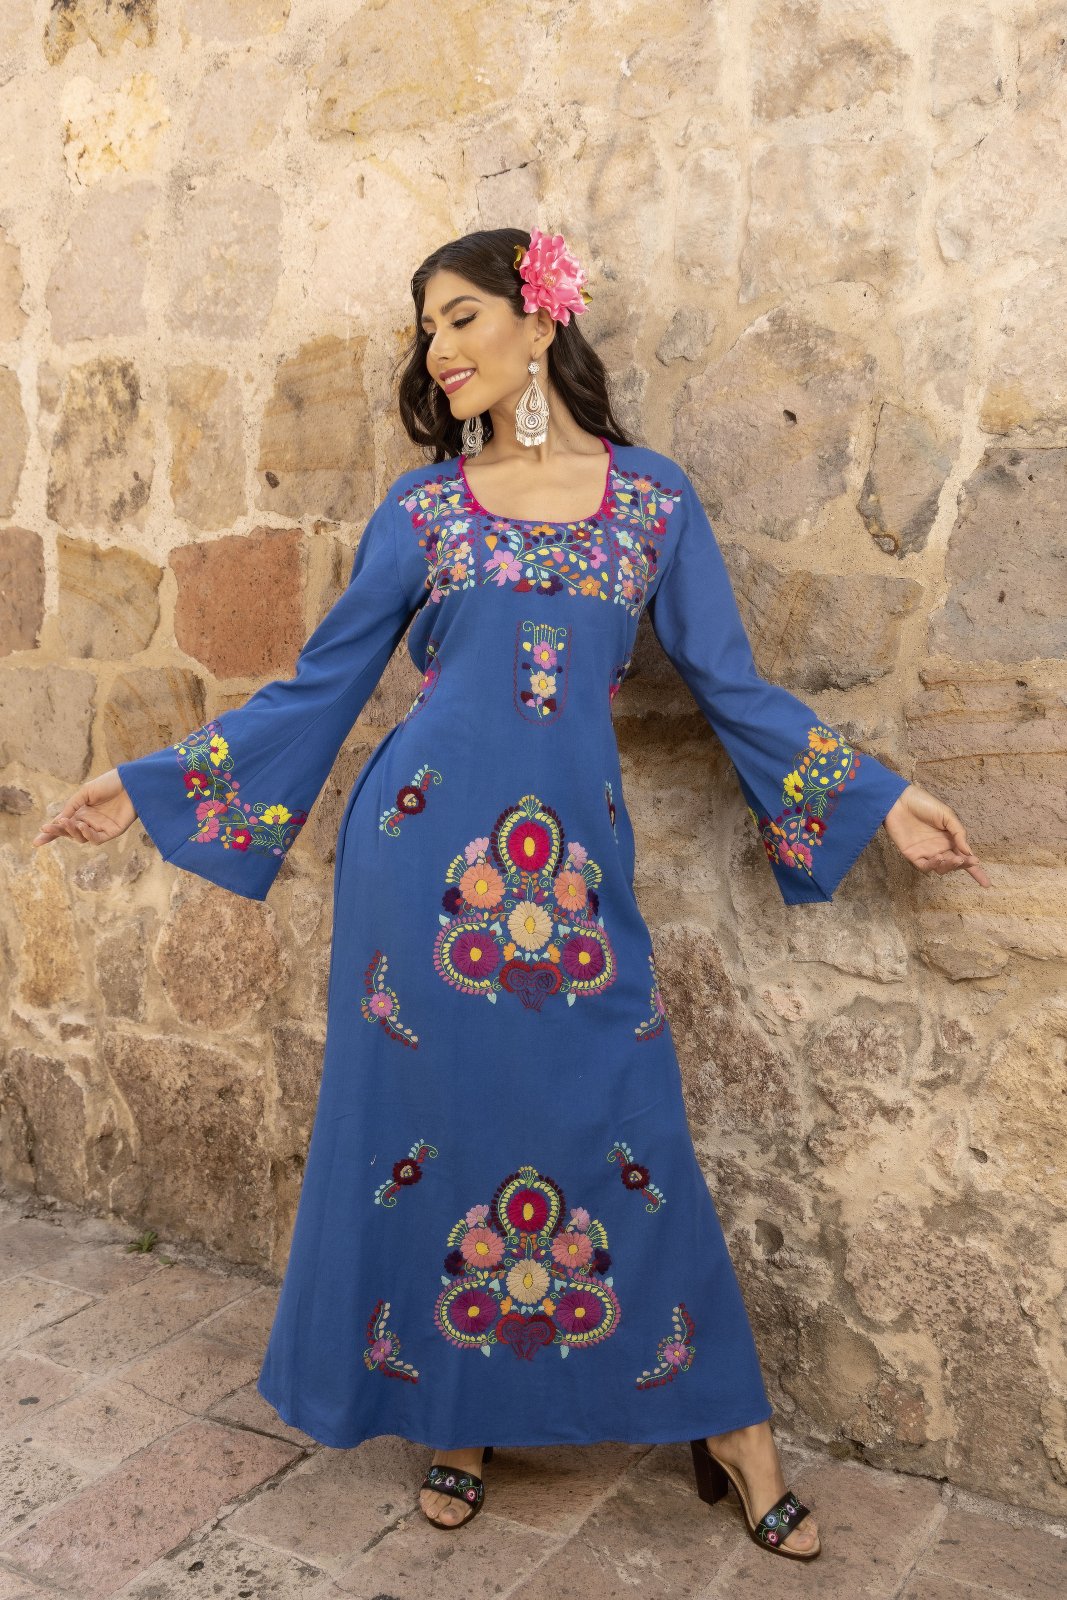 Multicolor Floral Mexican Dress. Royal Blue Dress-Multicolor Floral Design